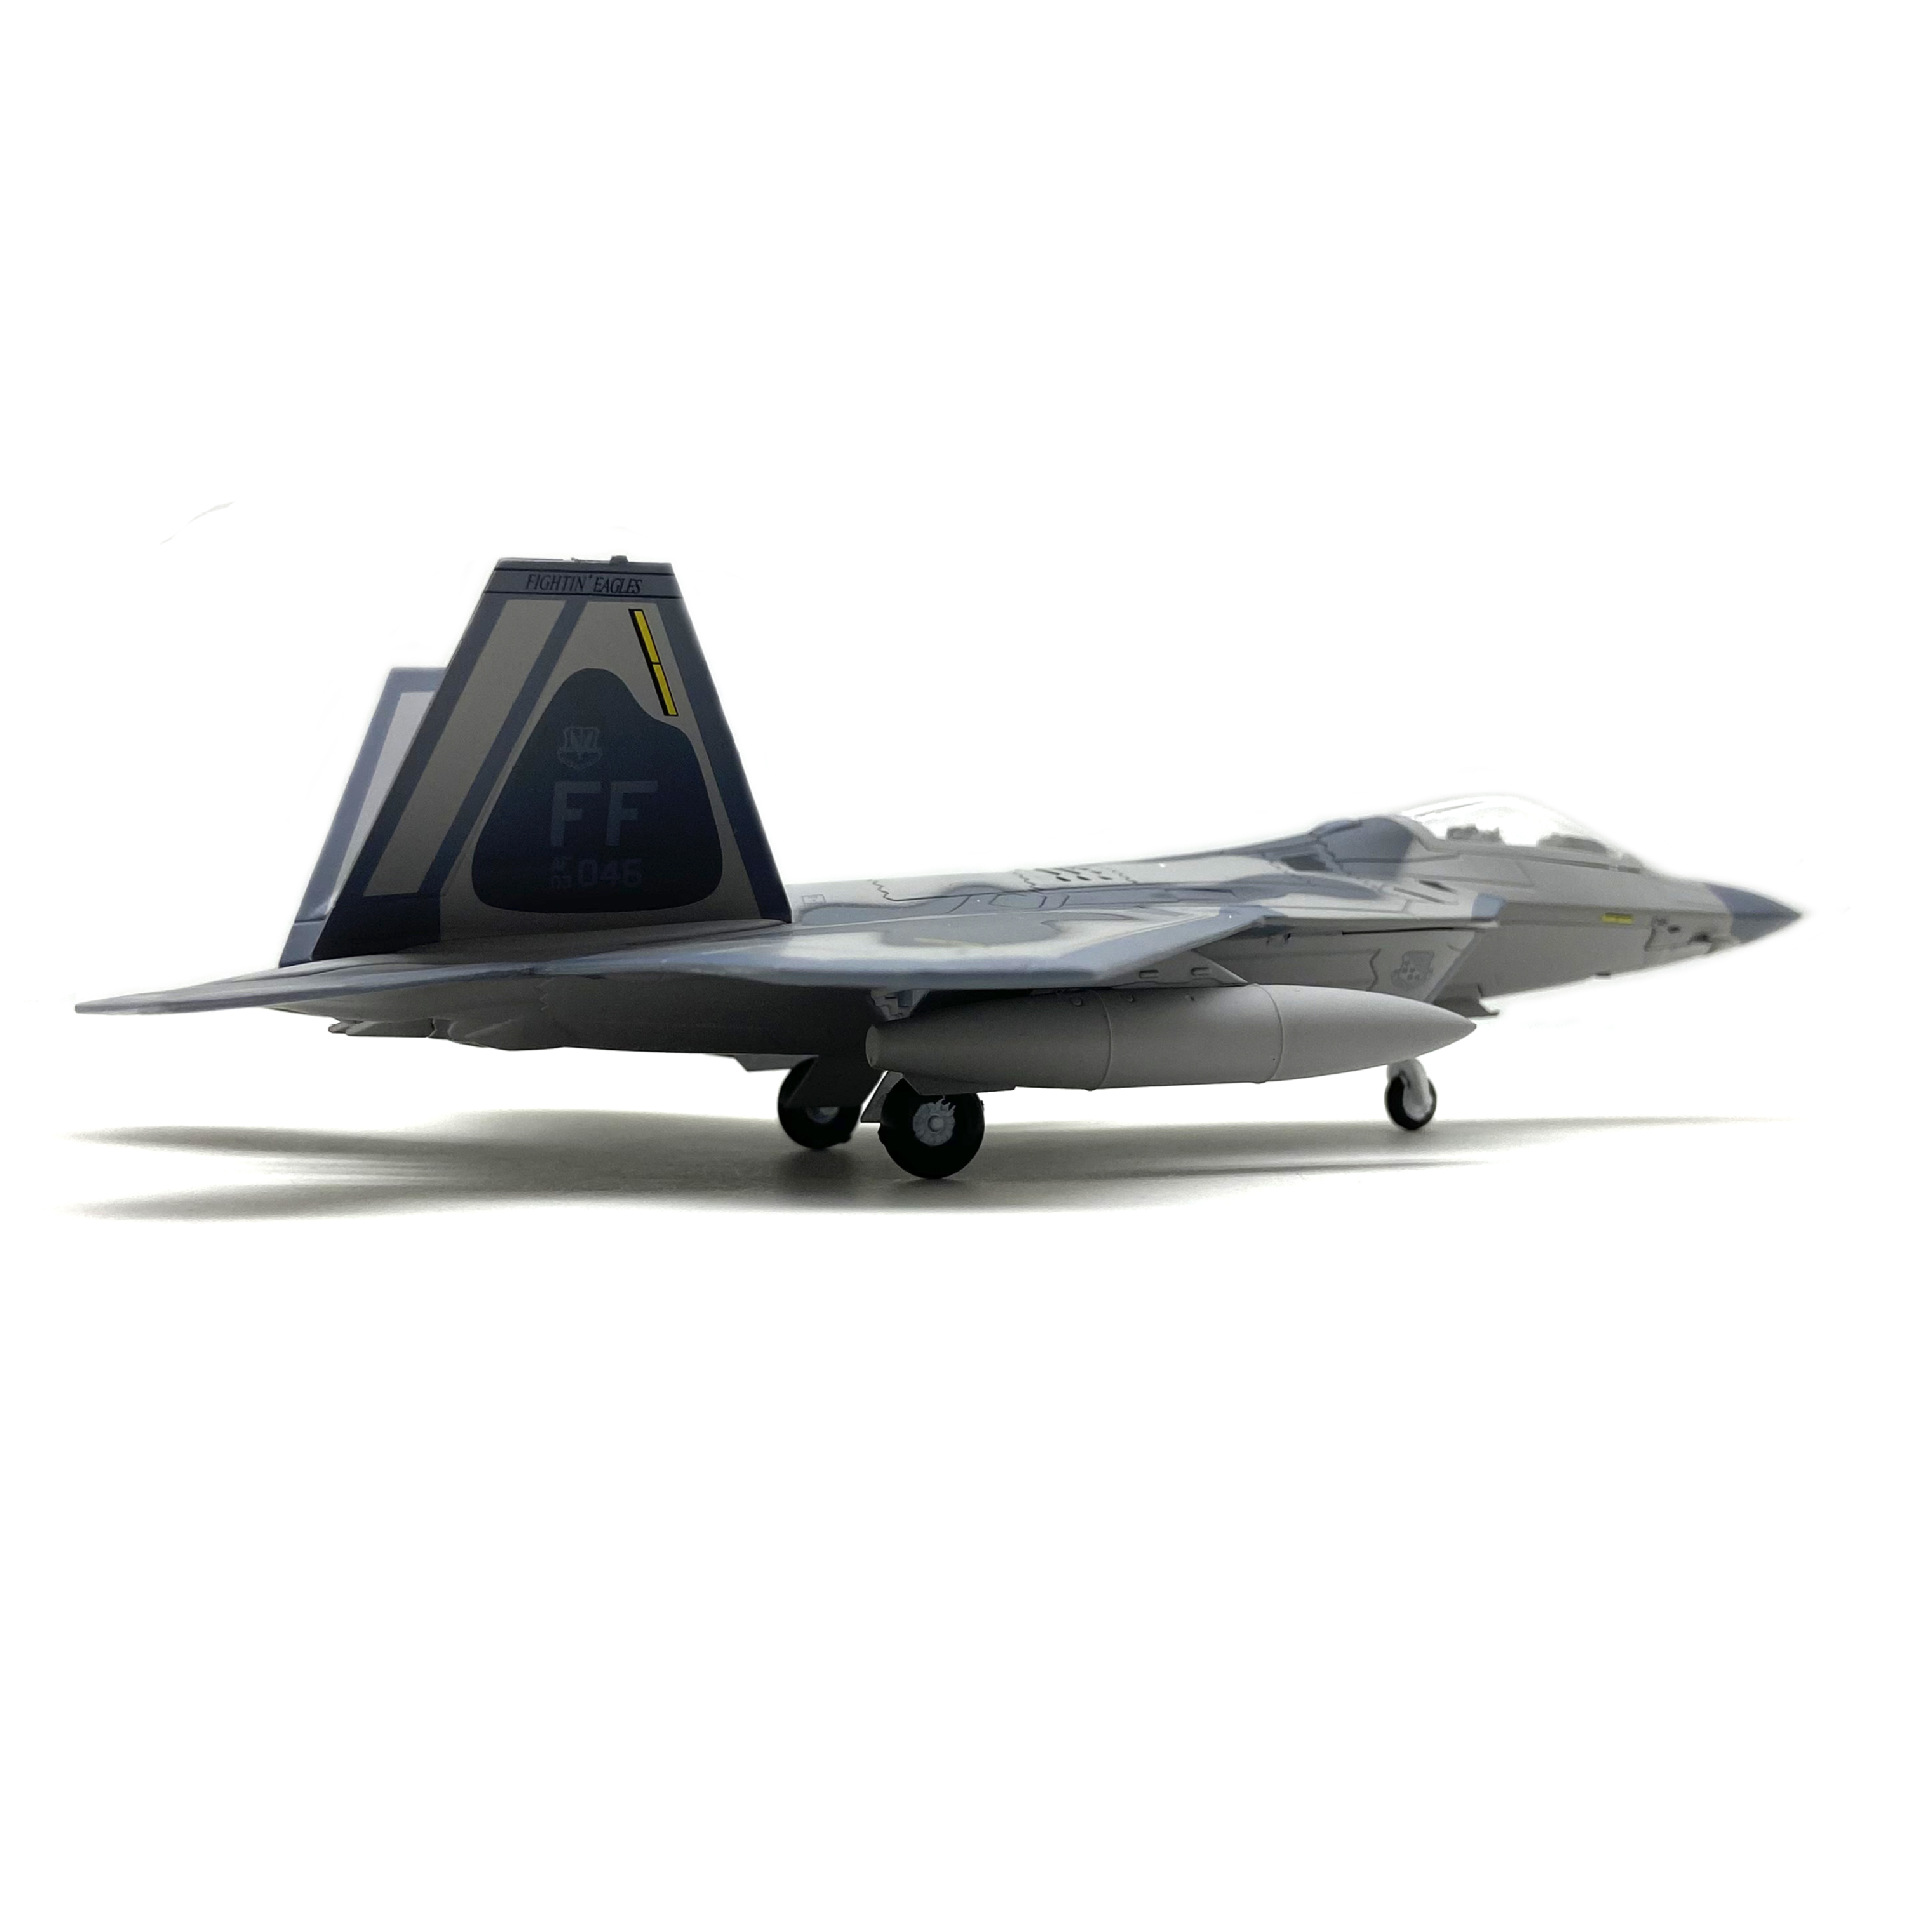  Mô hình máy bay chiến đấu USA F-22 Lockheed Martin Raptor tỉ lệ 1:100 Ns models MBQS012 